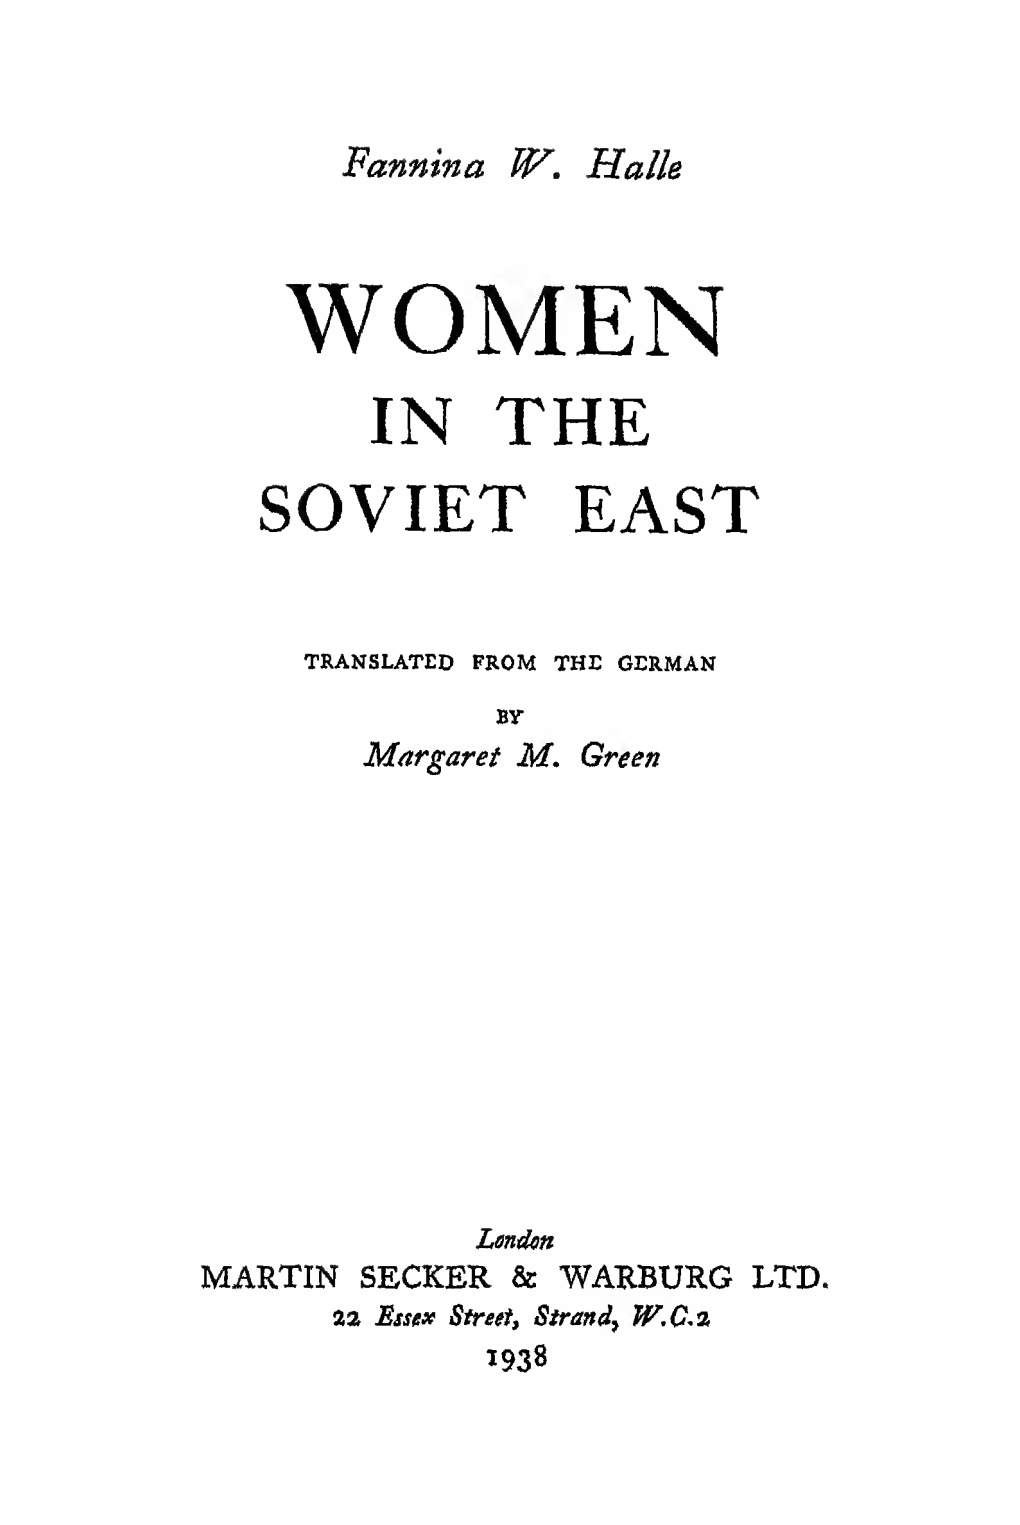 Women in the Soviet East